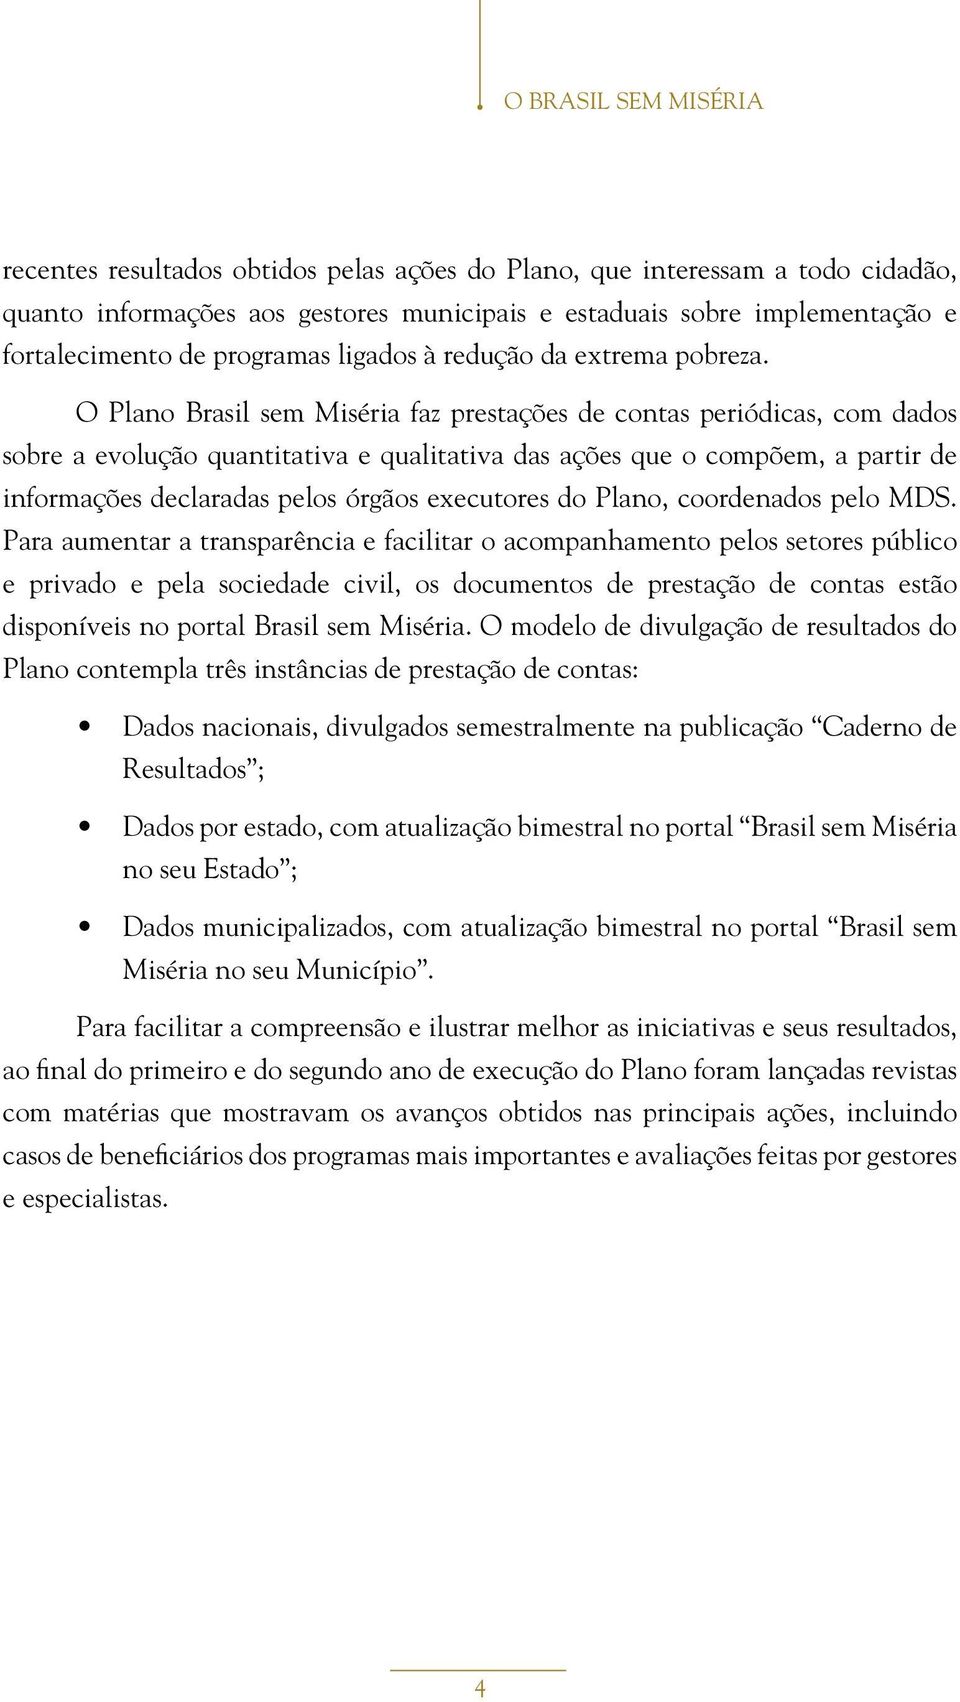 O Plano Brasil sem Miséria faz prestações de contas periódicas, com dados sobre a evolução quantitativa e qualitativa das ações que o compõem, a partir de informações declaradas pelos órgãos